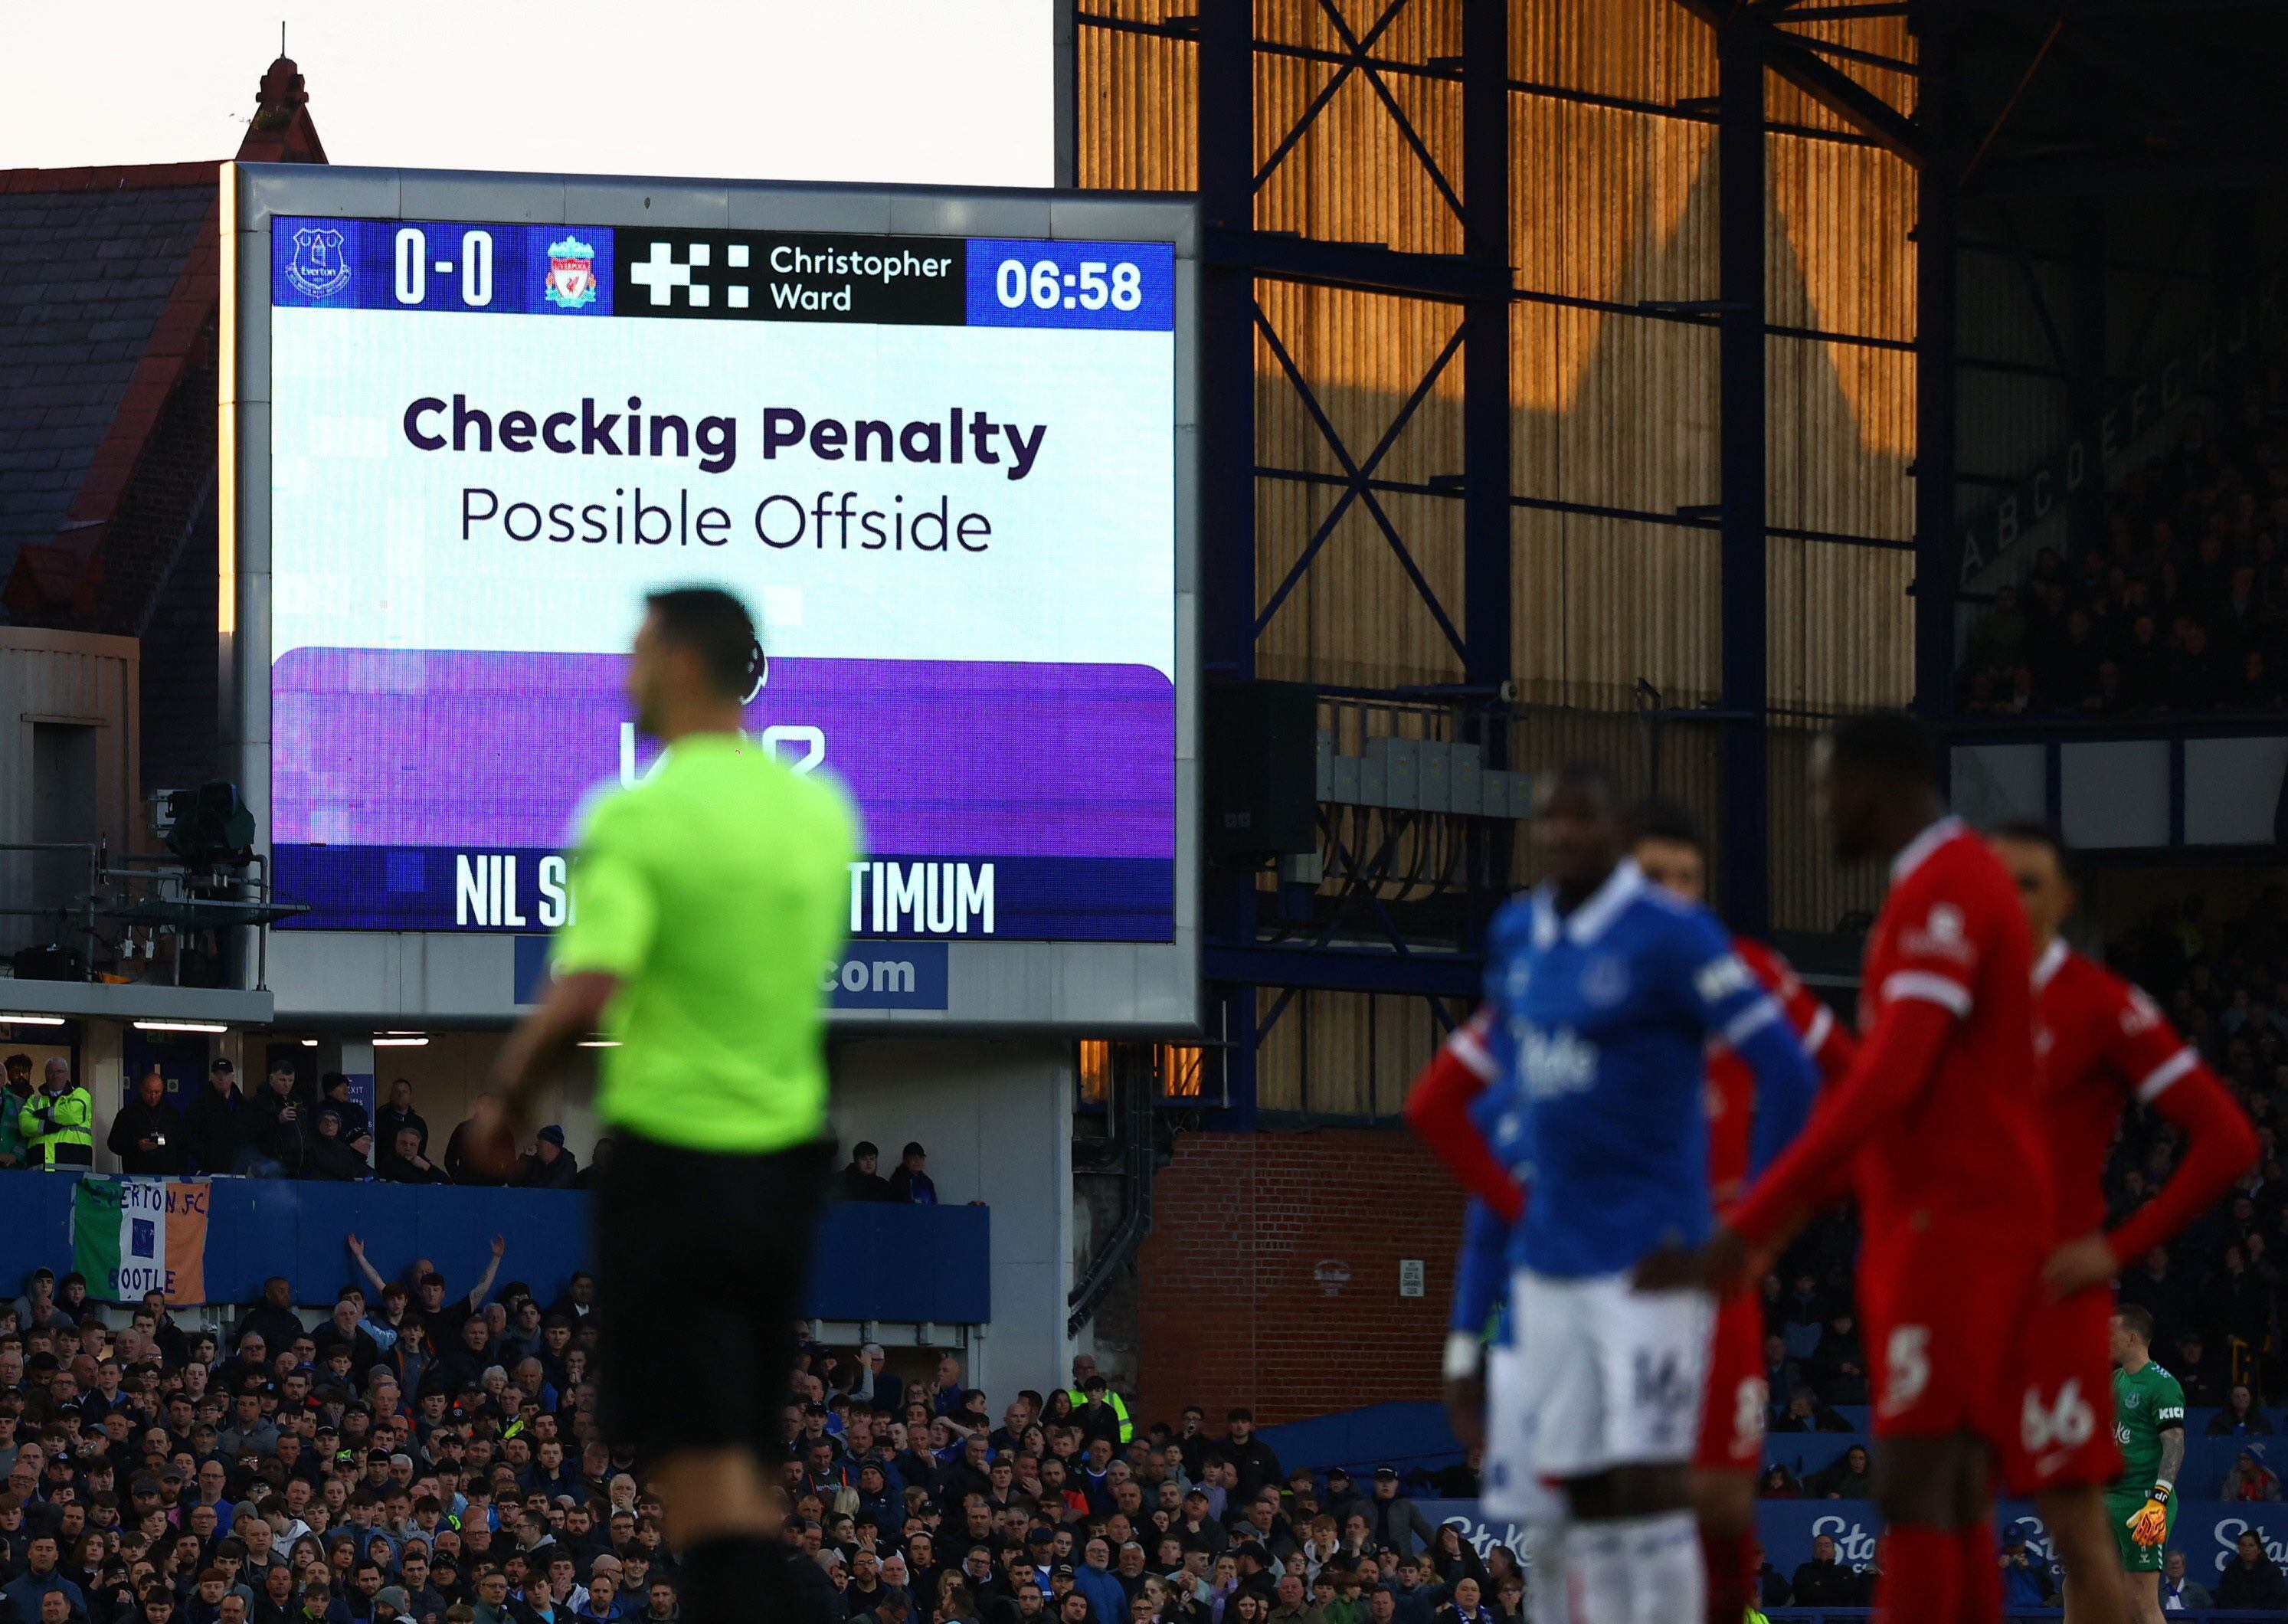 Se revirtió el penalti para Everton luego de que el VAR determinara que hubo posición adelantada en la jugada previa - crédito Reuters/Lee Smith